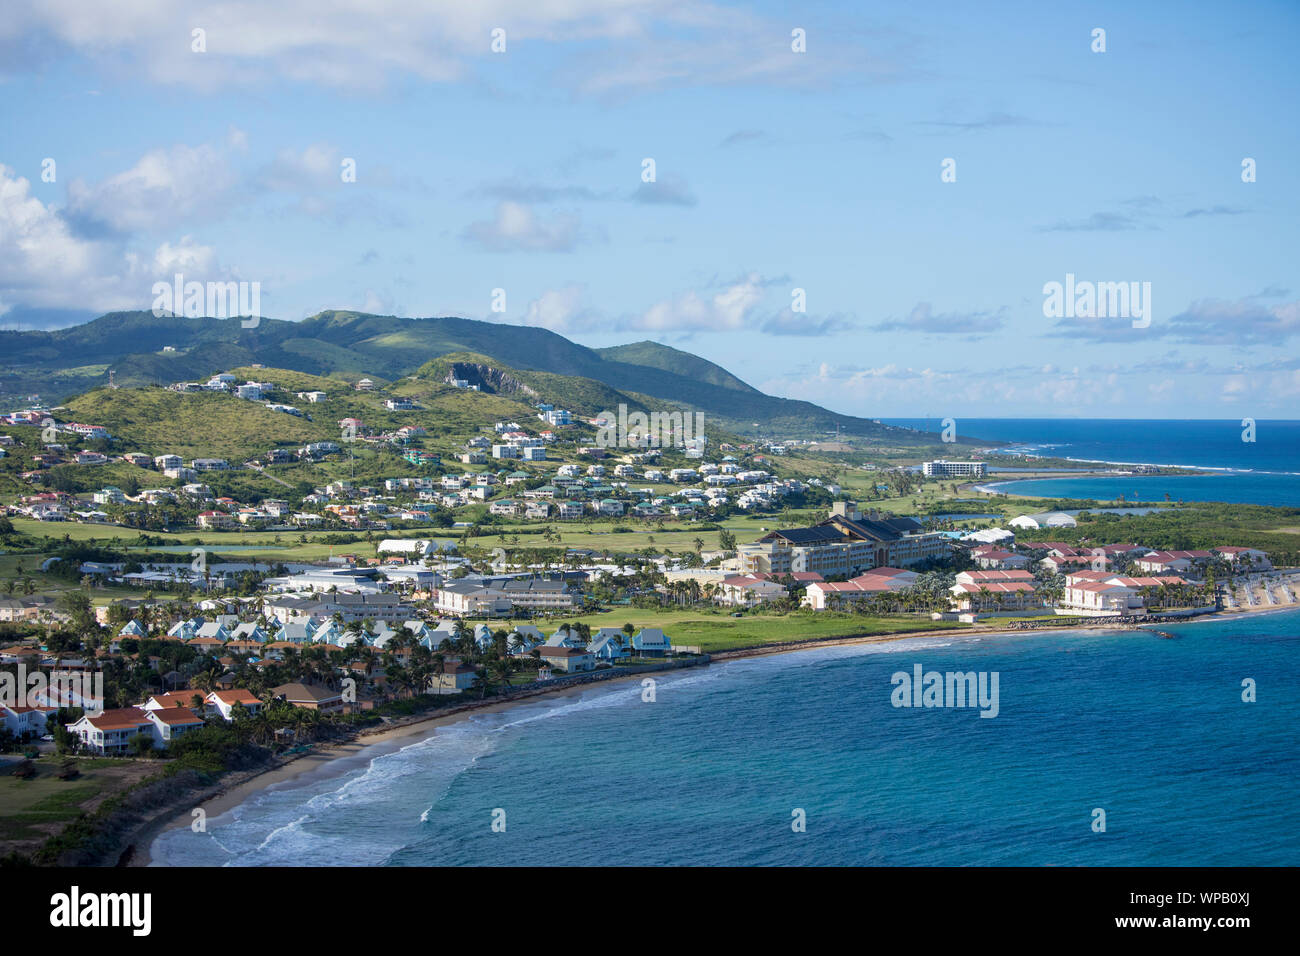 Bassa vista aerea di spiagge e alberghi a St Kitts. Foto Stock